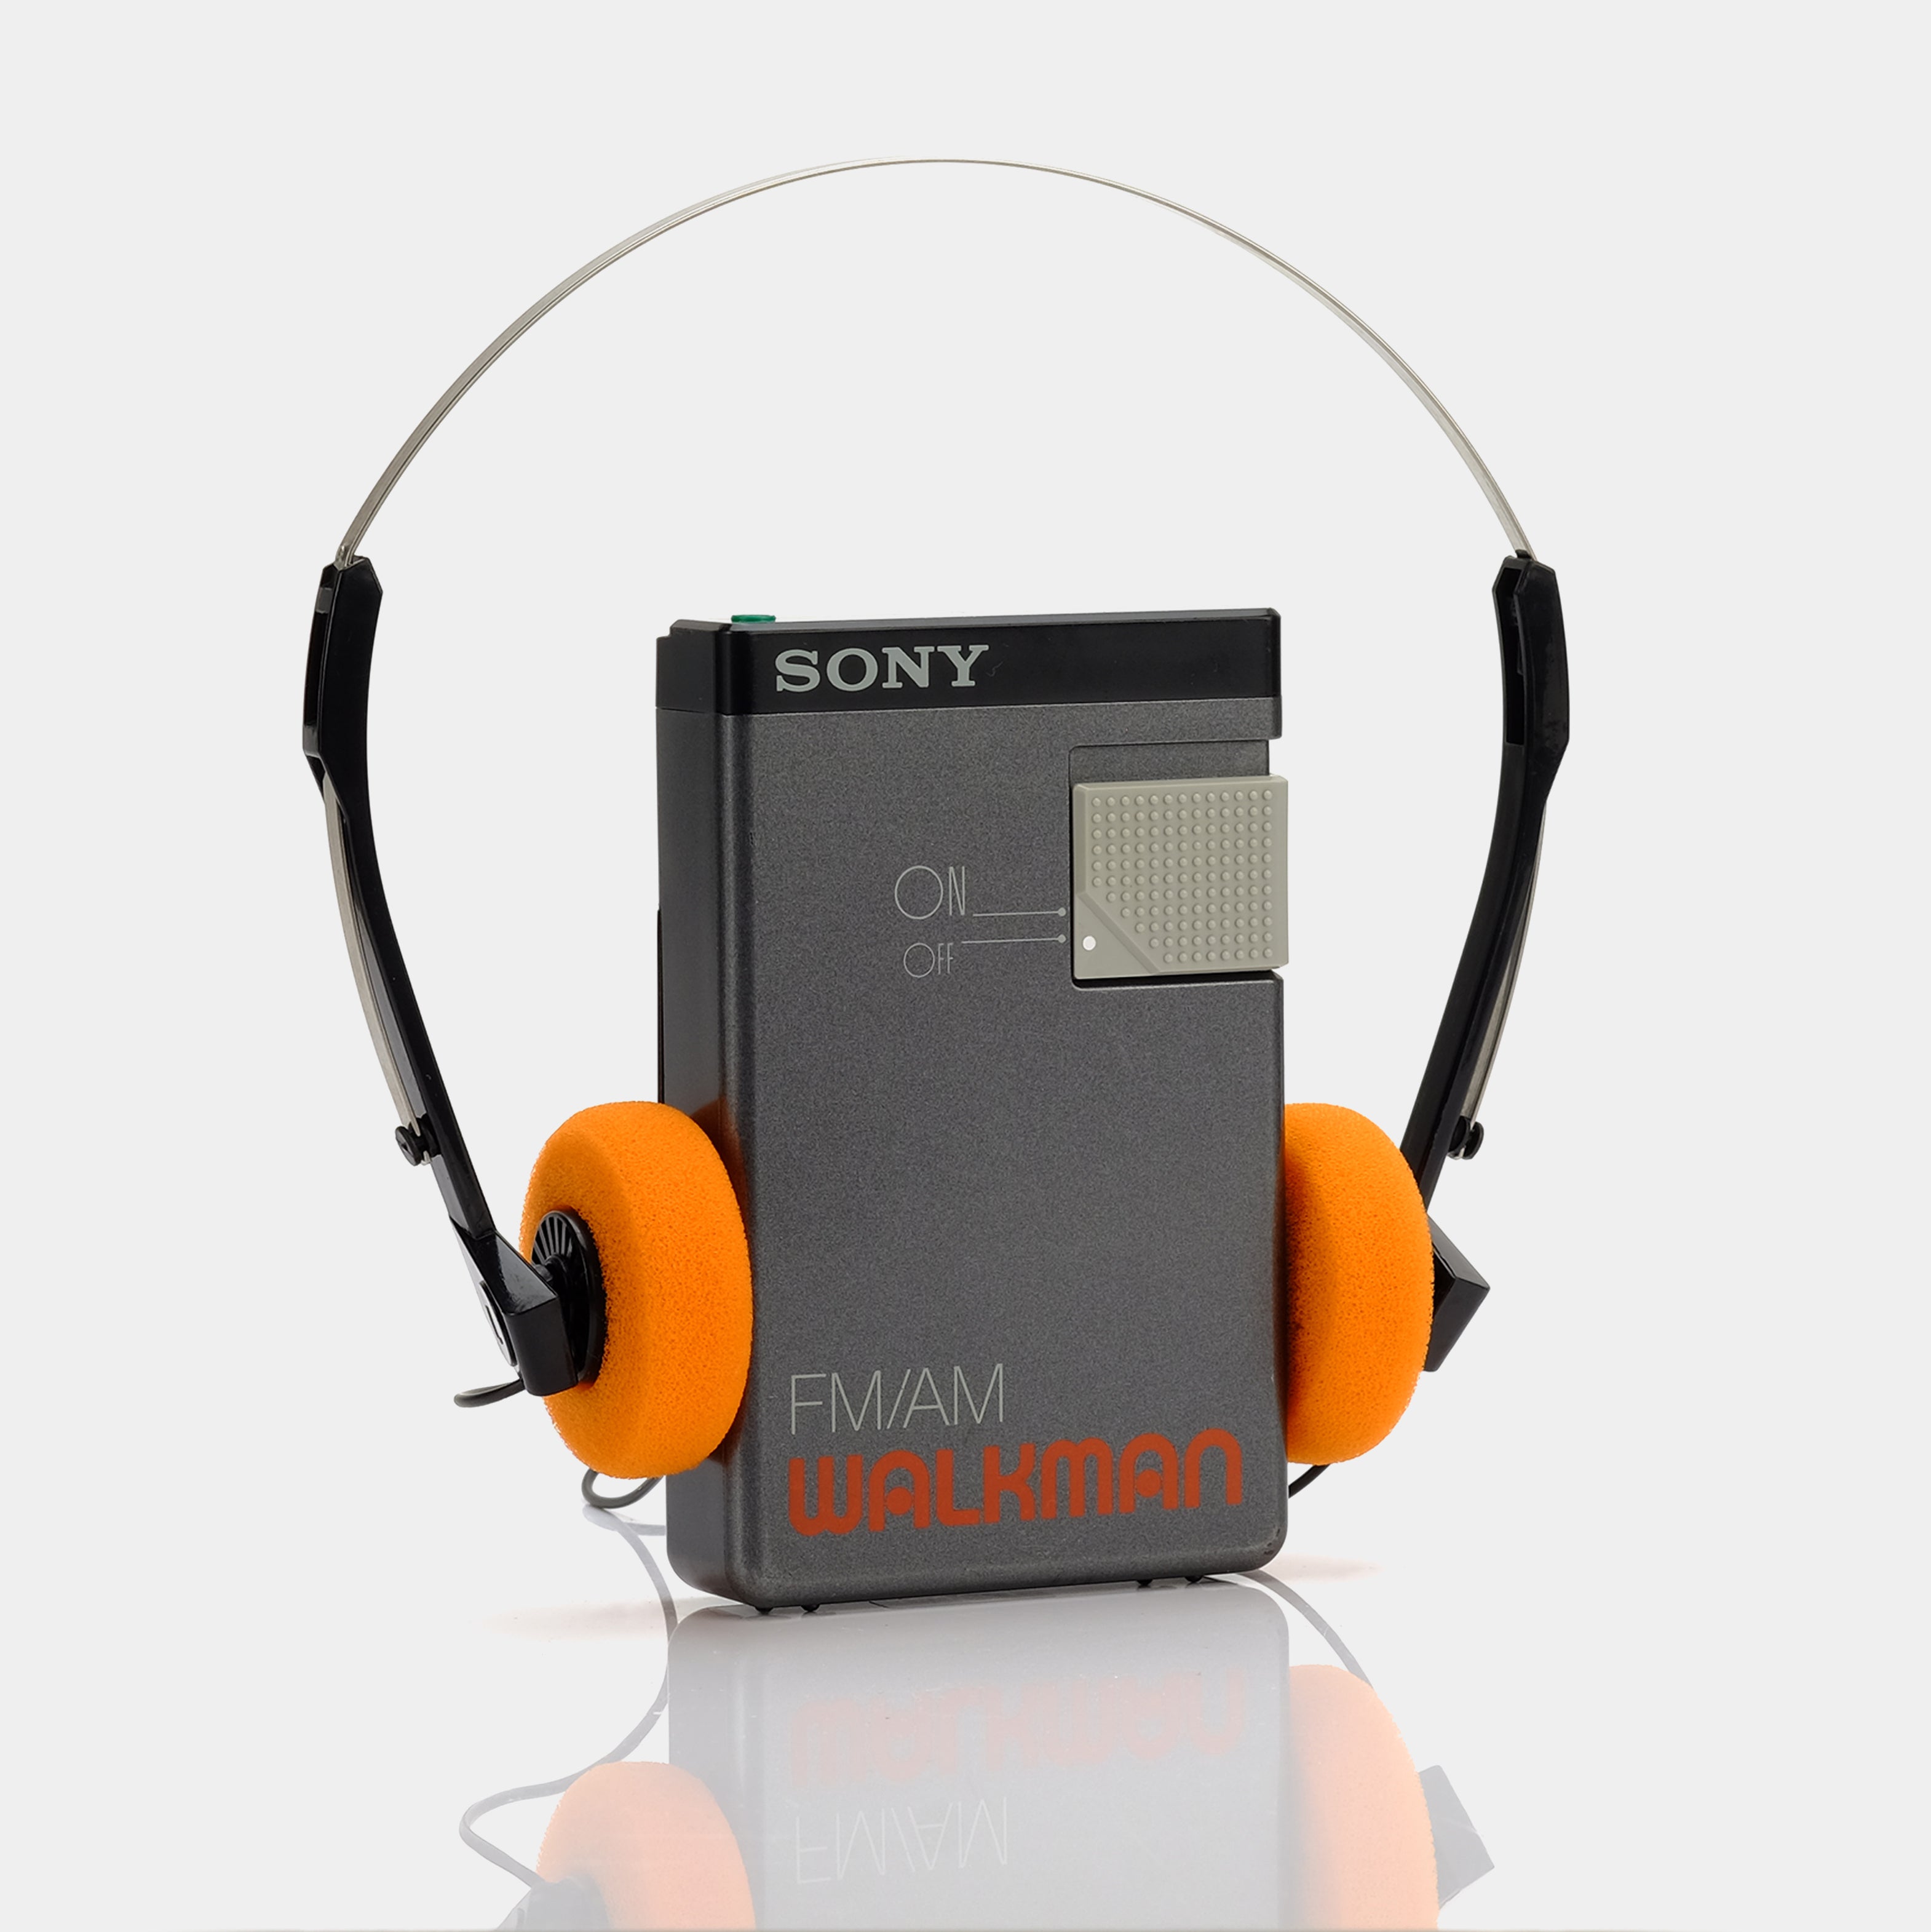 Sony Walkman SRF-19W AM/FM Portable Radio